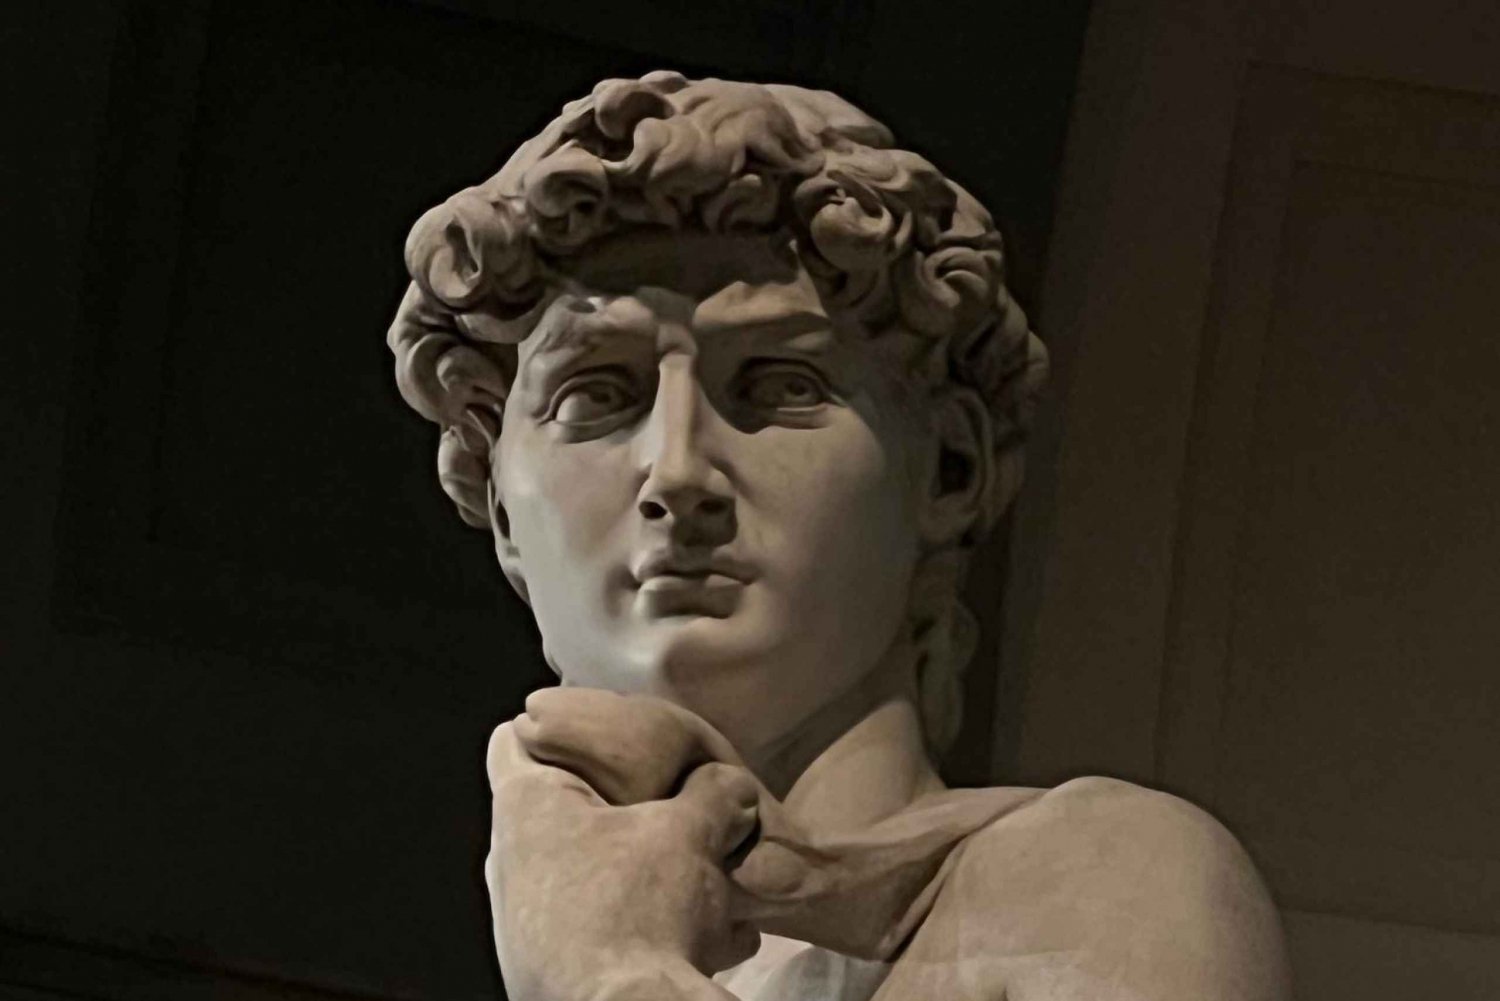 Firenze: Michelangelon Daavid: Accademia Reserved Ticket & Michelangelo's David